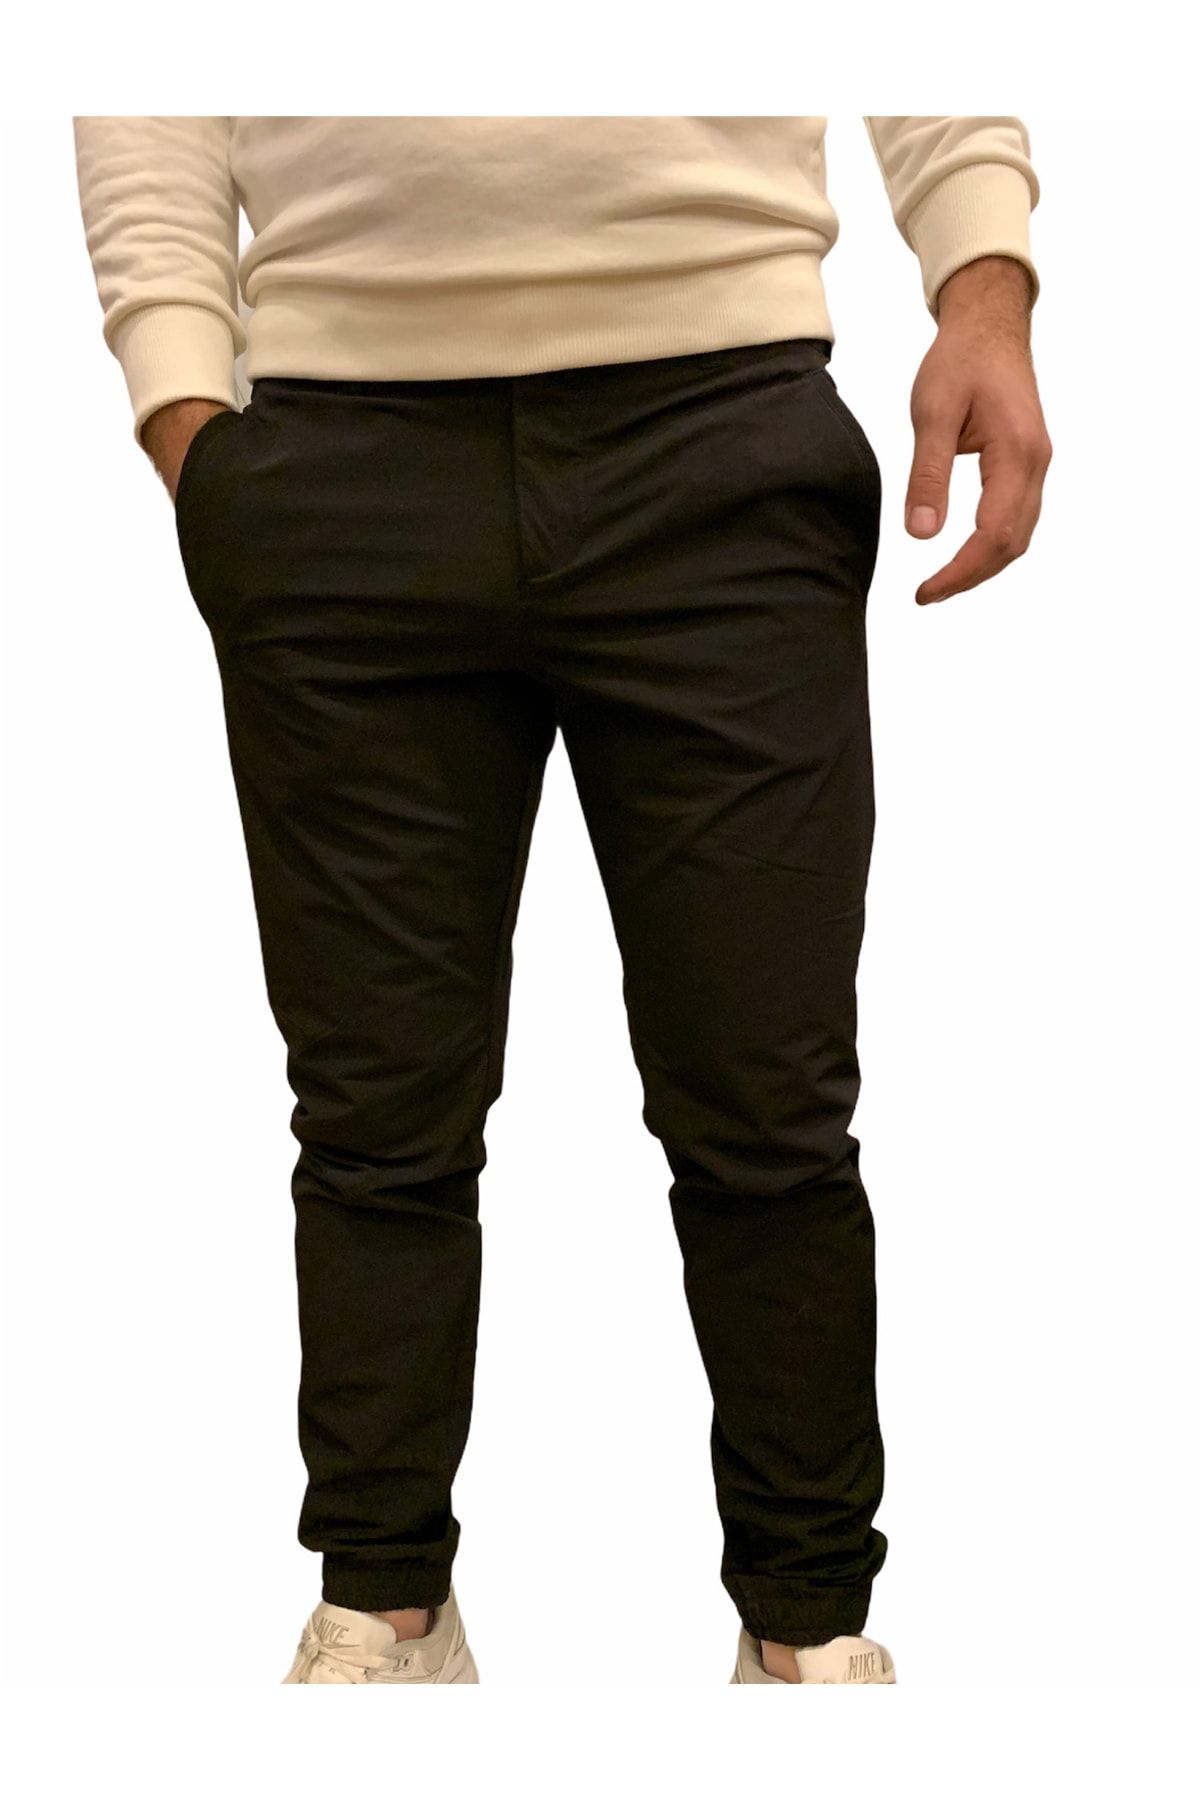 Exuma Outdoor Pant Erkek Siyah Pantolon 2013084-02